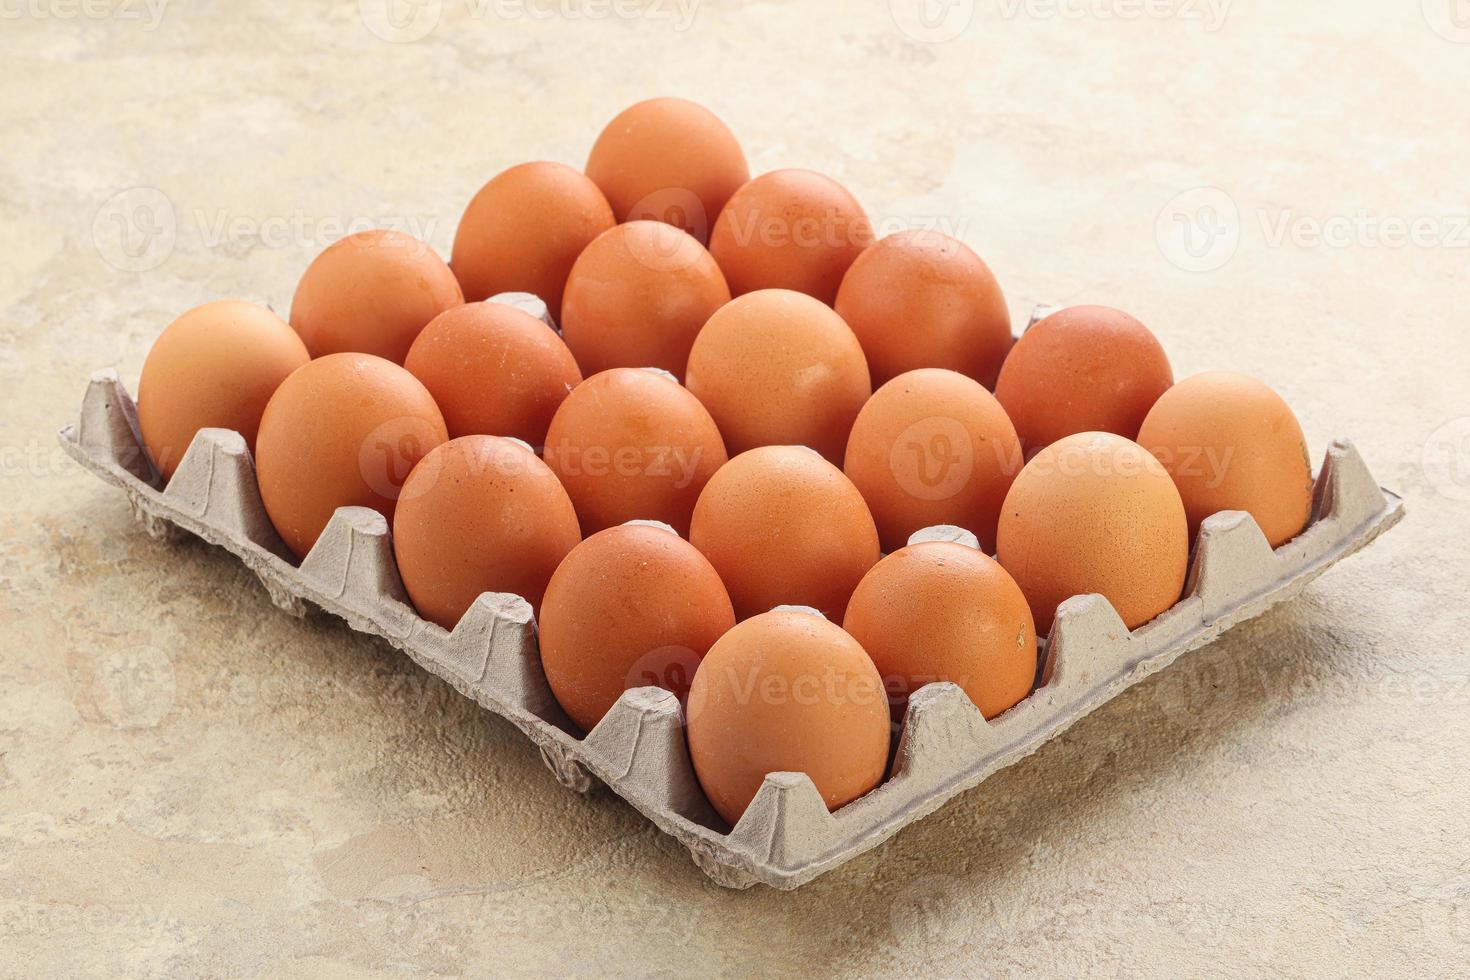 œuf de poule biologique dans le carton photo